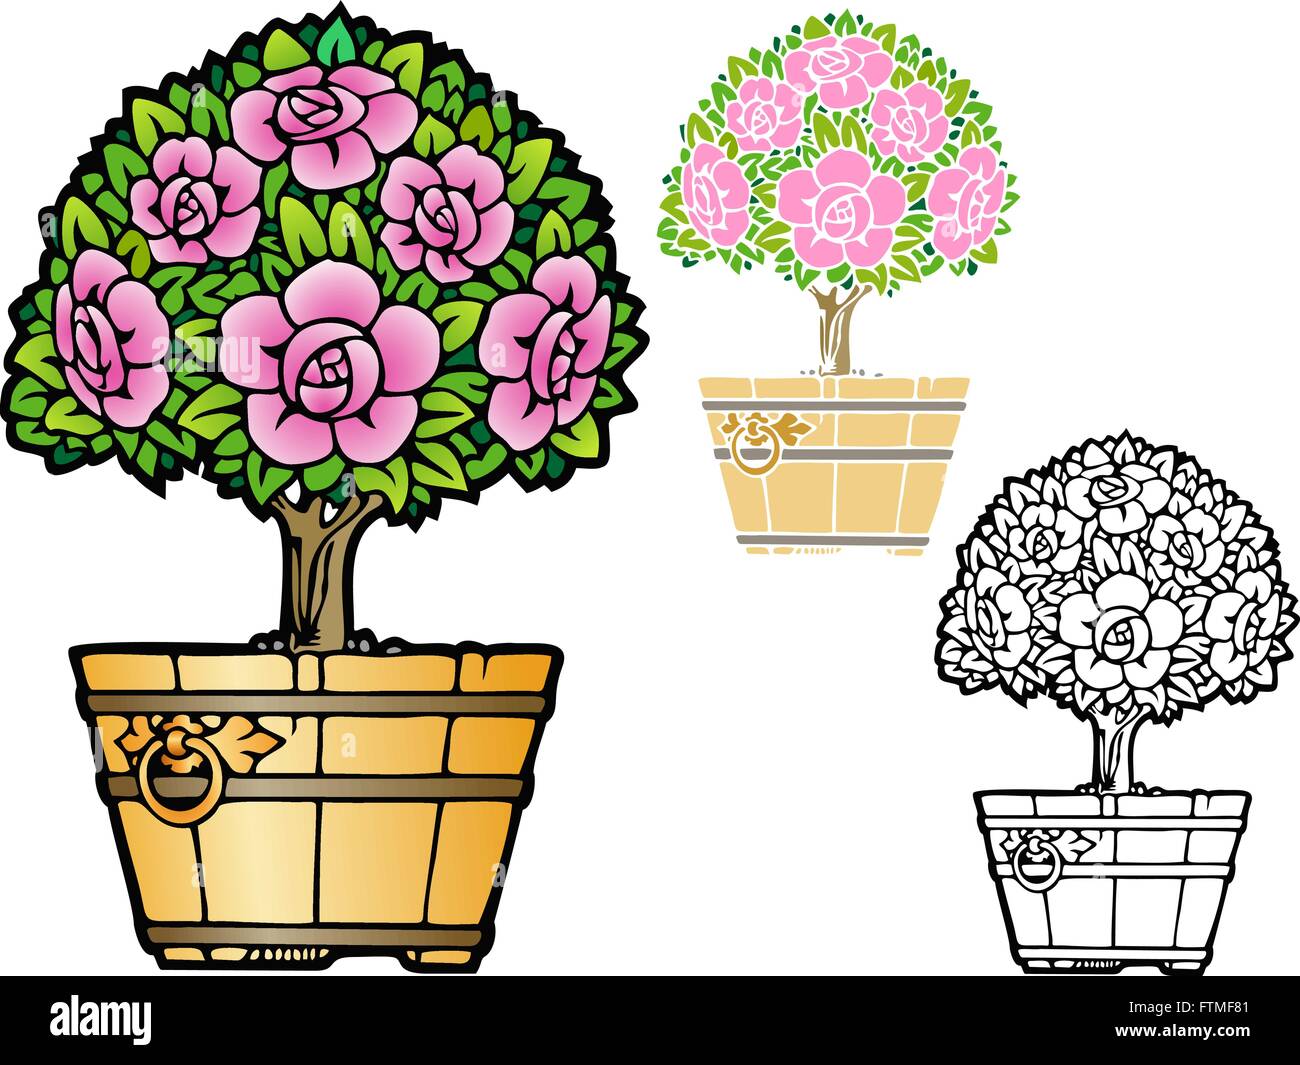 Como planta de interior decorativa, topiary rose tree en una cuchara. Incluye un contorno negro y no las versiones de degradado. Ilustración del Vector